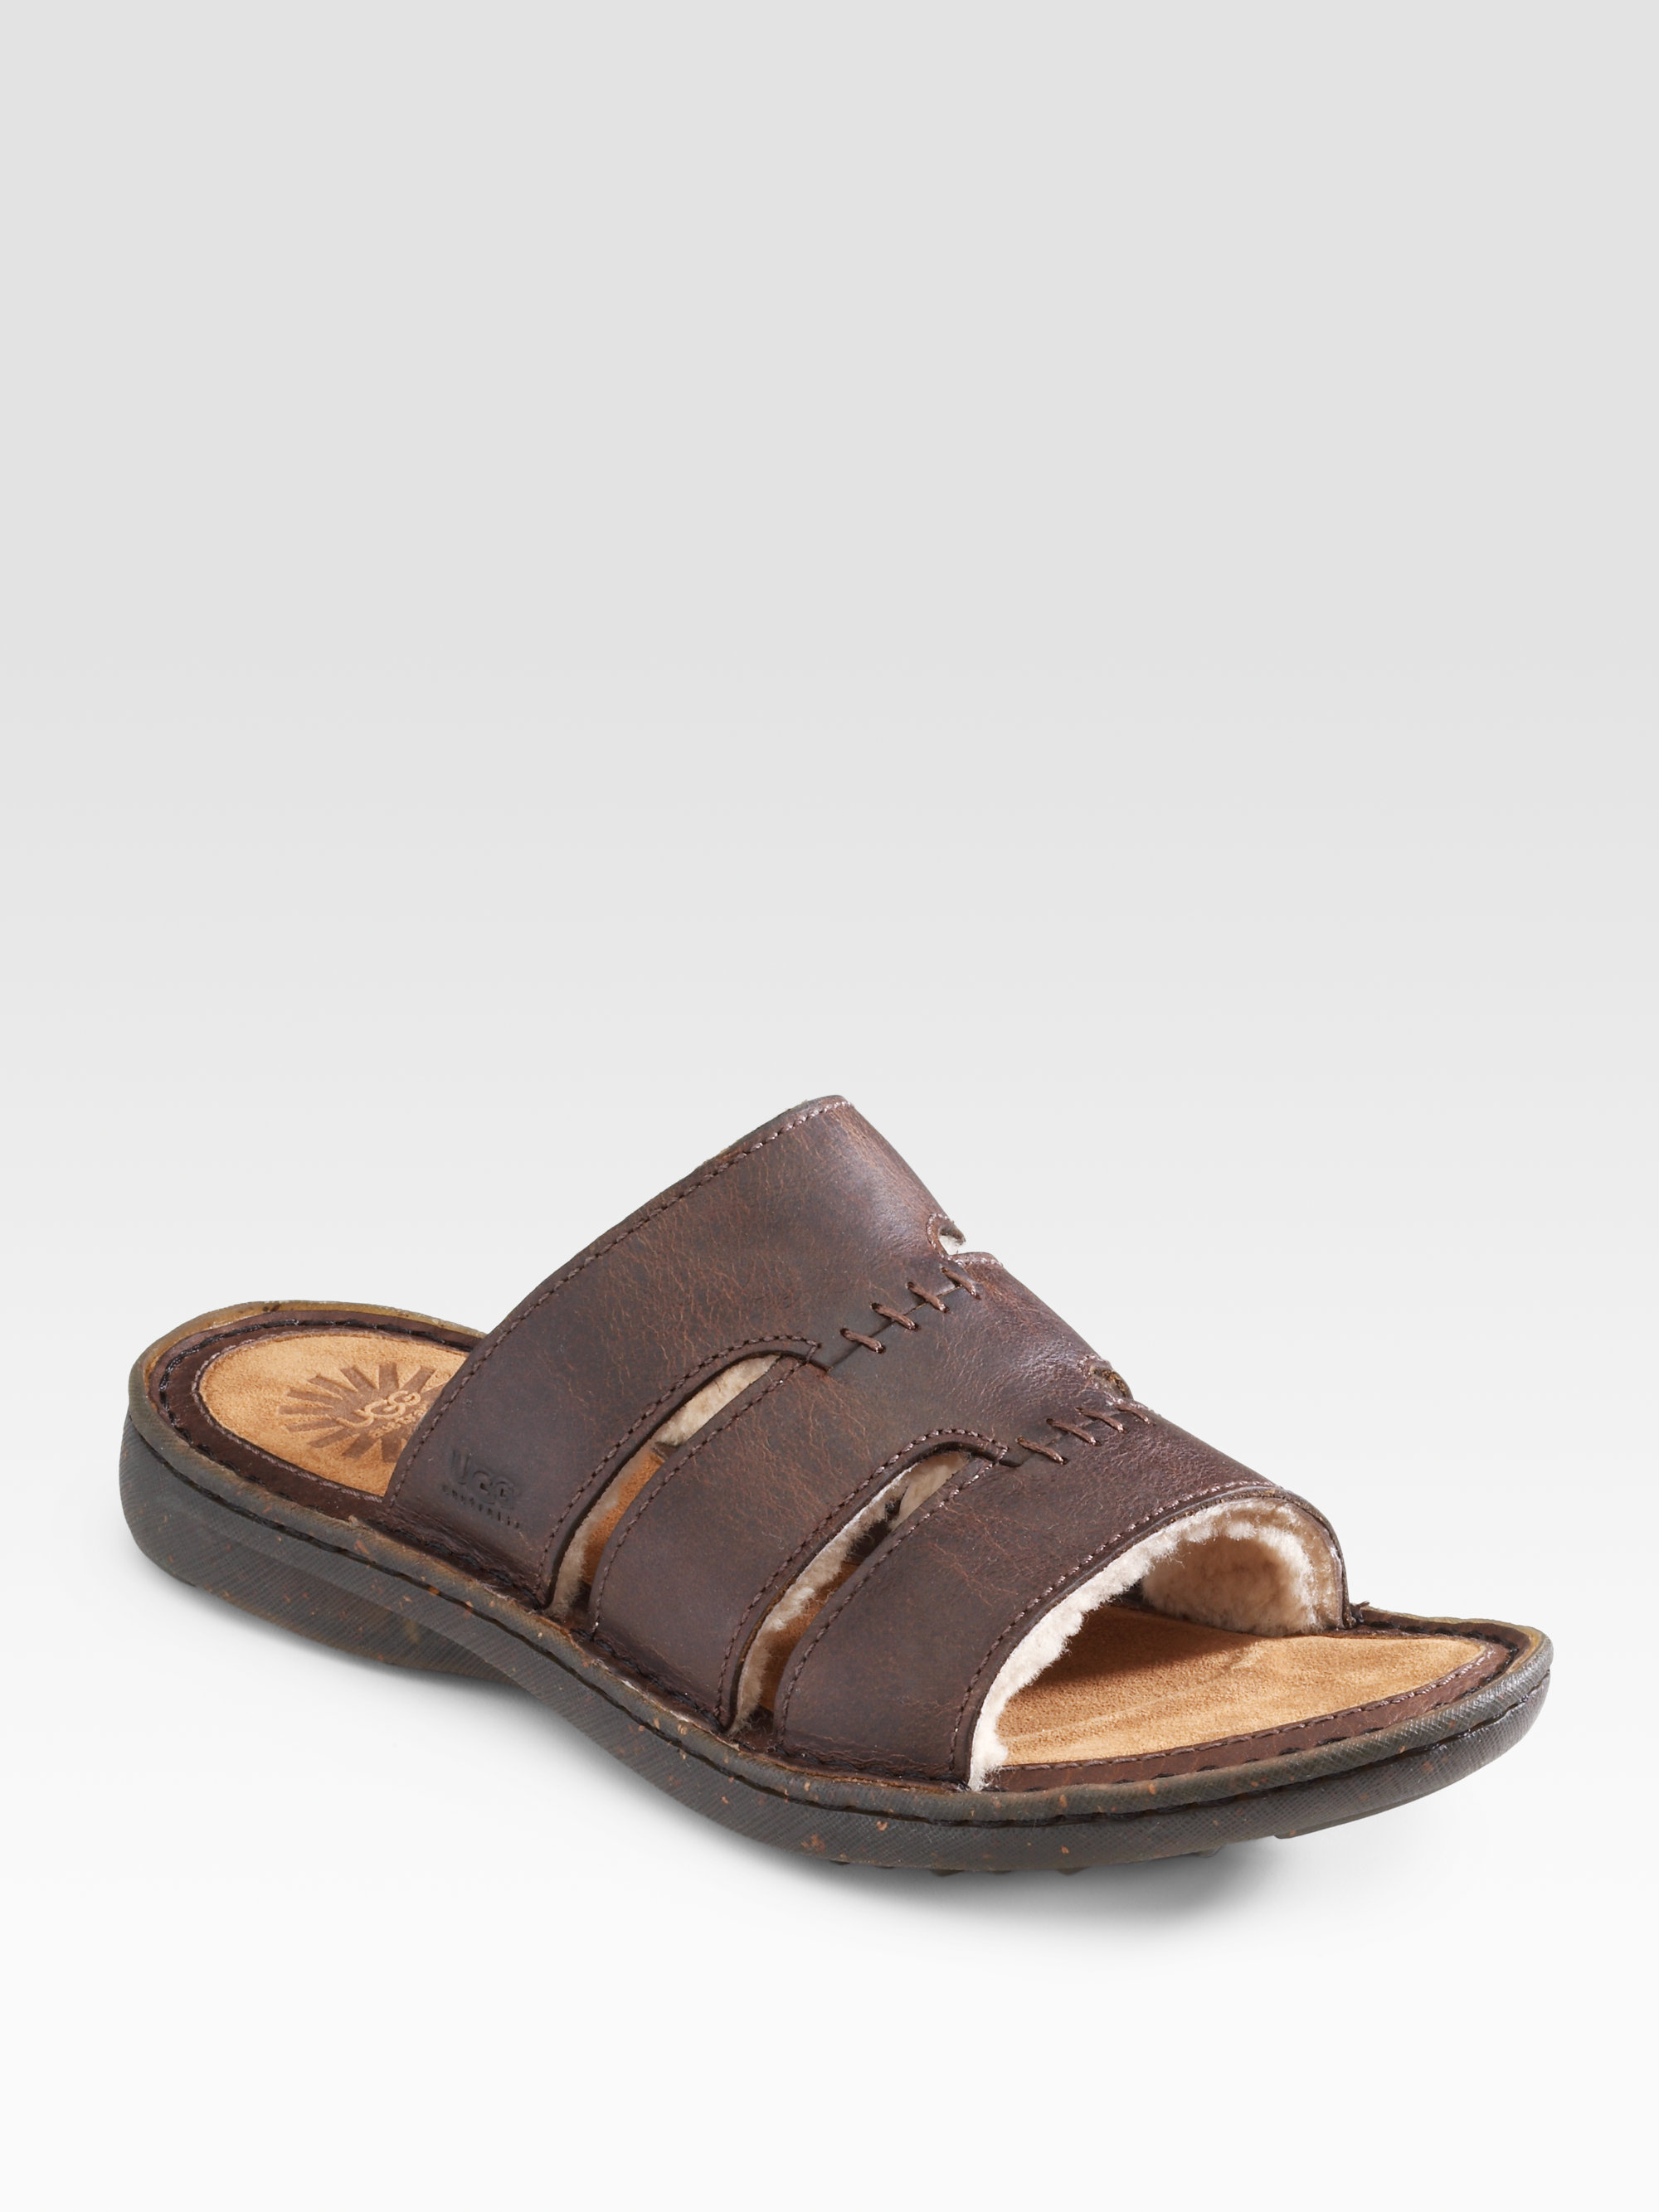 UGG Osprey Sandals in Brown for Men - Lyst